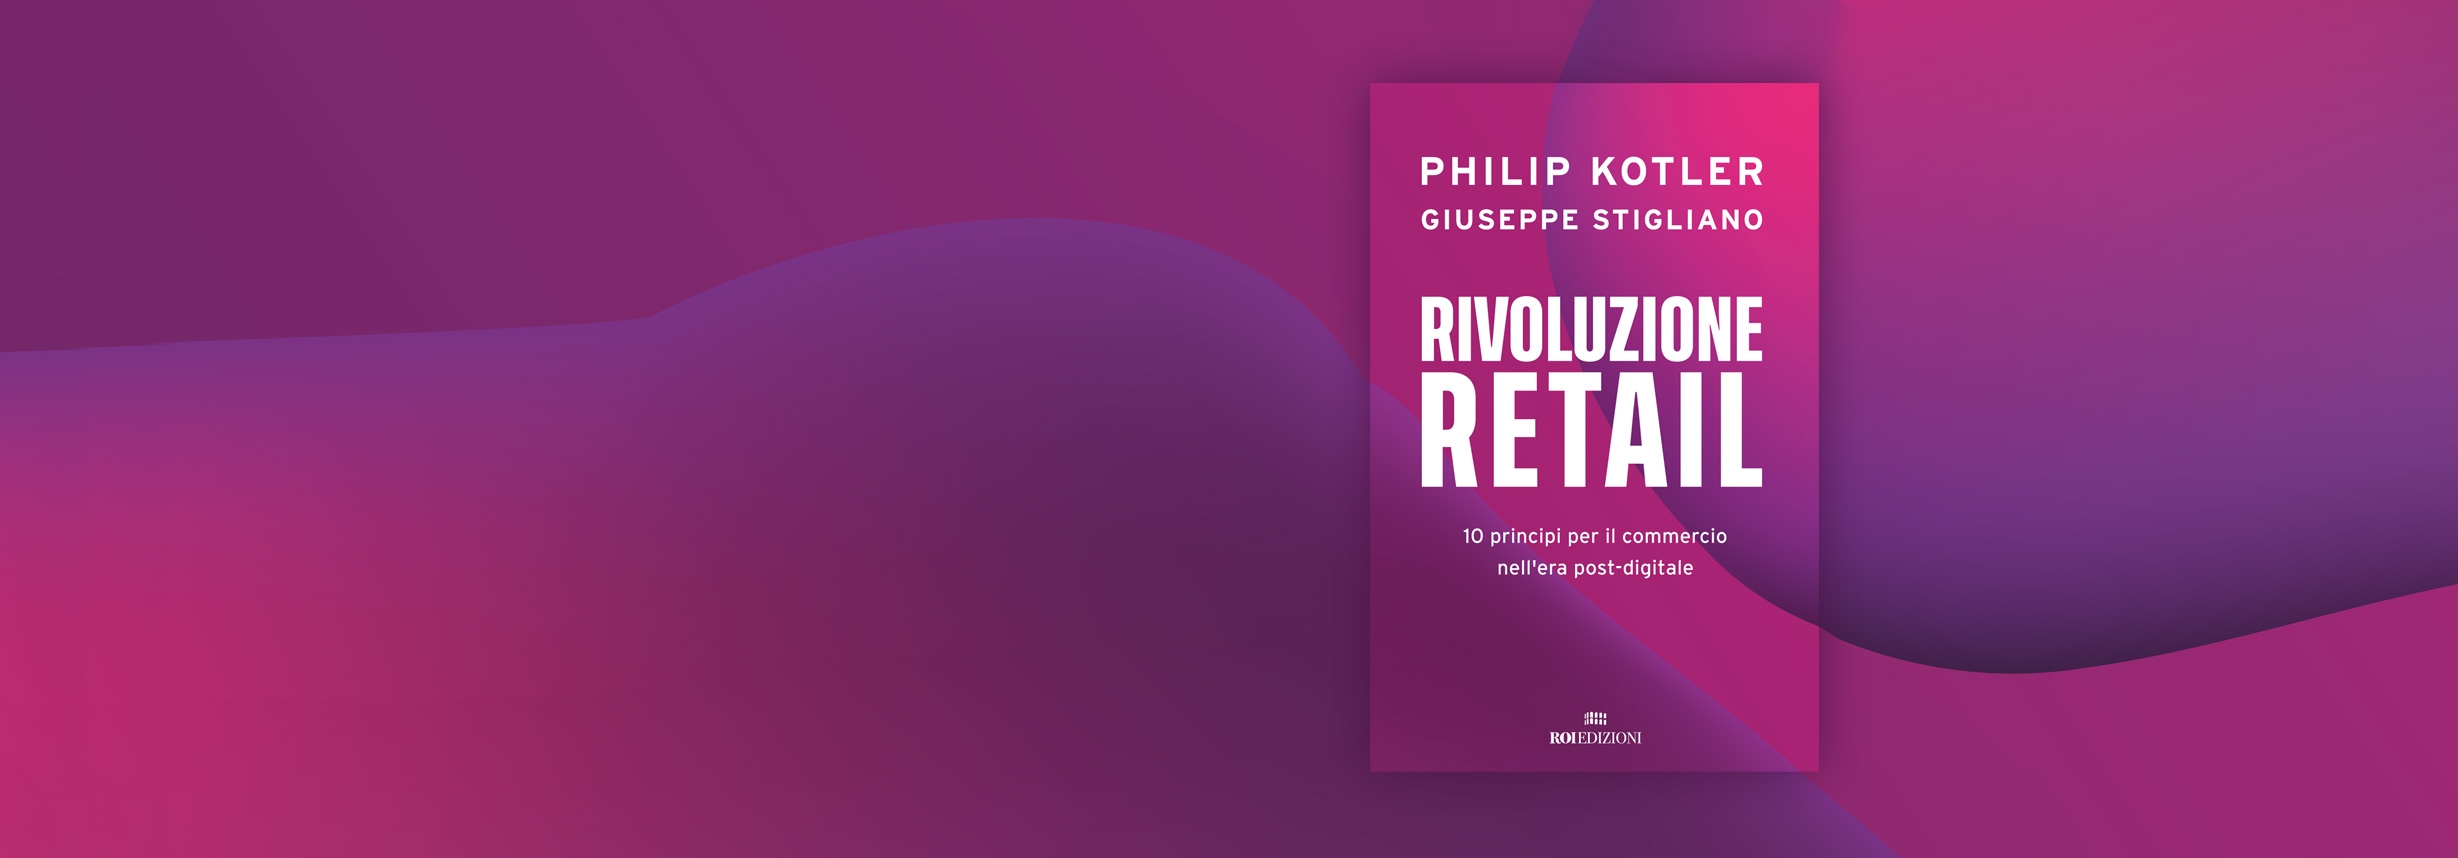 Rivoluzione Retail, Philip Kotler - Giuseppe Stigliano